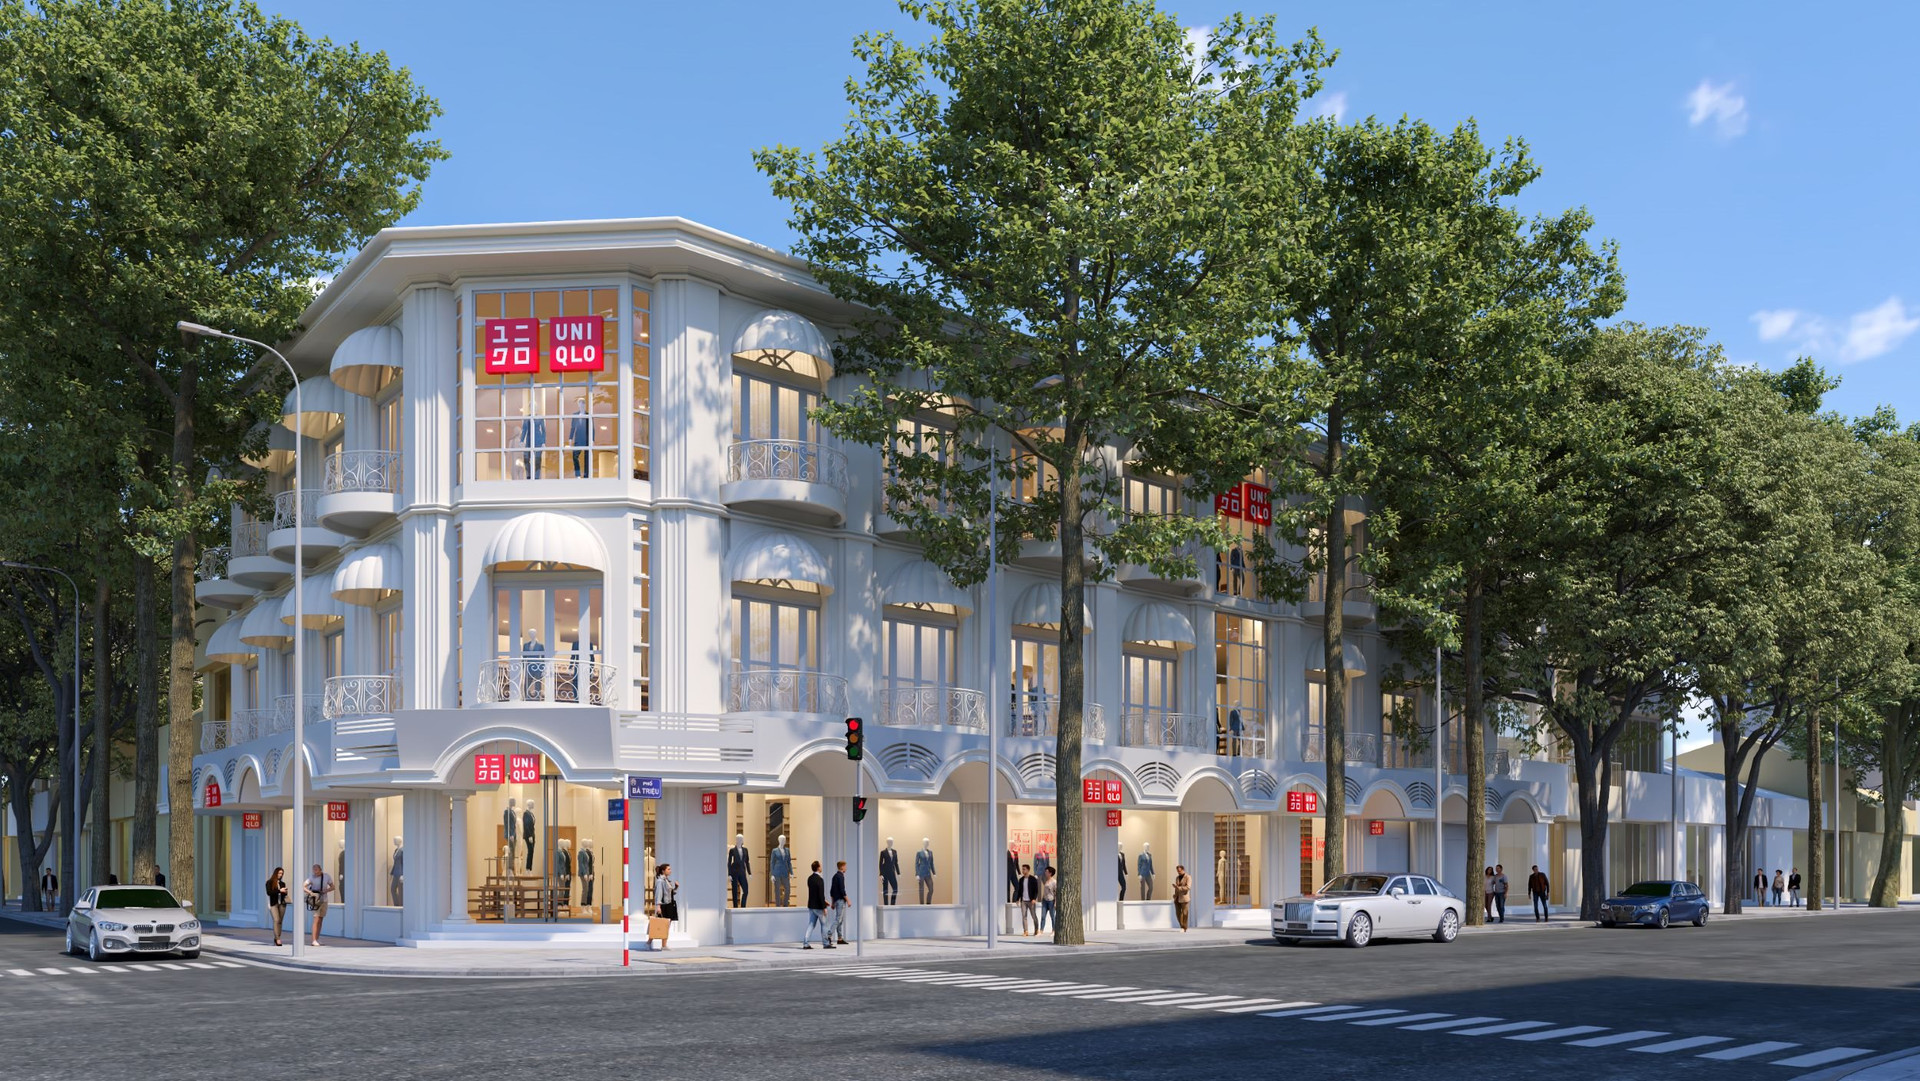 Đánh dấu cửa hàng thứ 10 ở Hà Nội, UNIQLO thuê hẳn mặt bằng 3 tầng giữa trung tâm đất vàng thủ đô